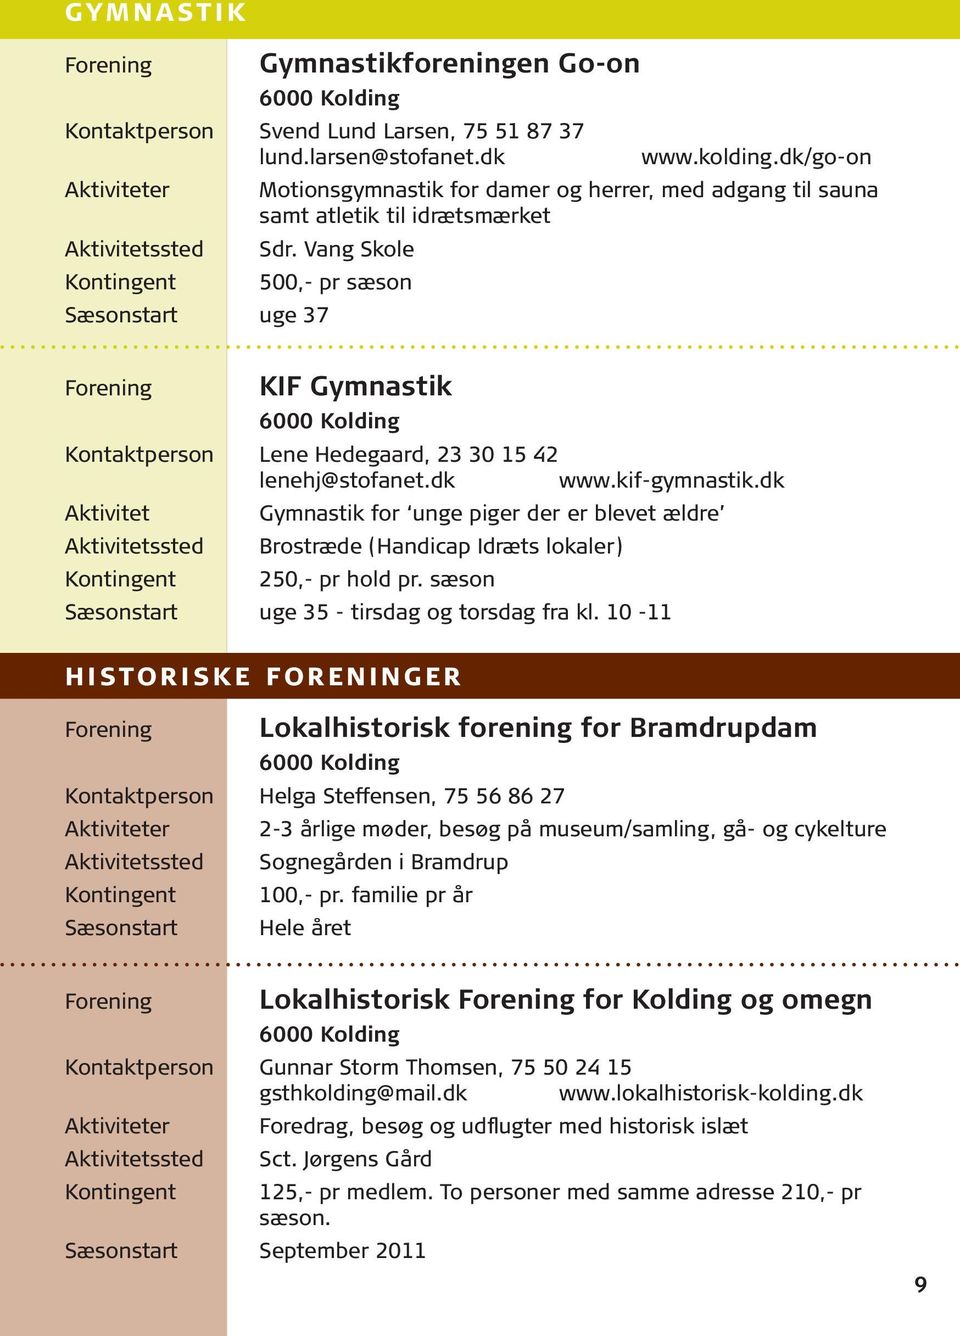 Vang Skole 500,- pr sæson KIF Gymnastik Kontaktperson Lene Hedegaard, 23 30 15 42 lenehj@stofanet.dk www.kif-gymnastik.